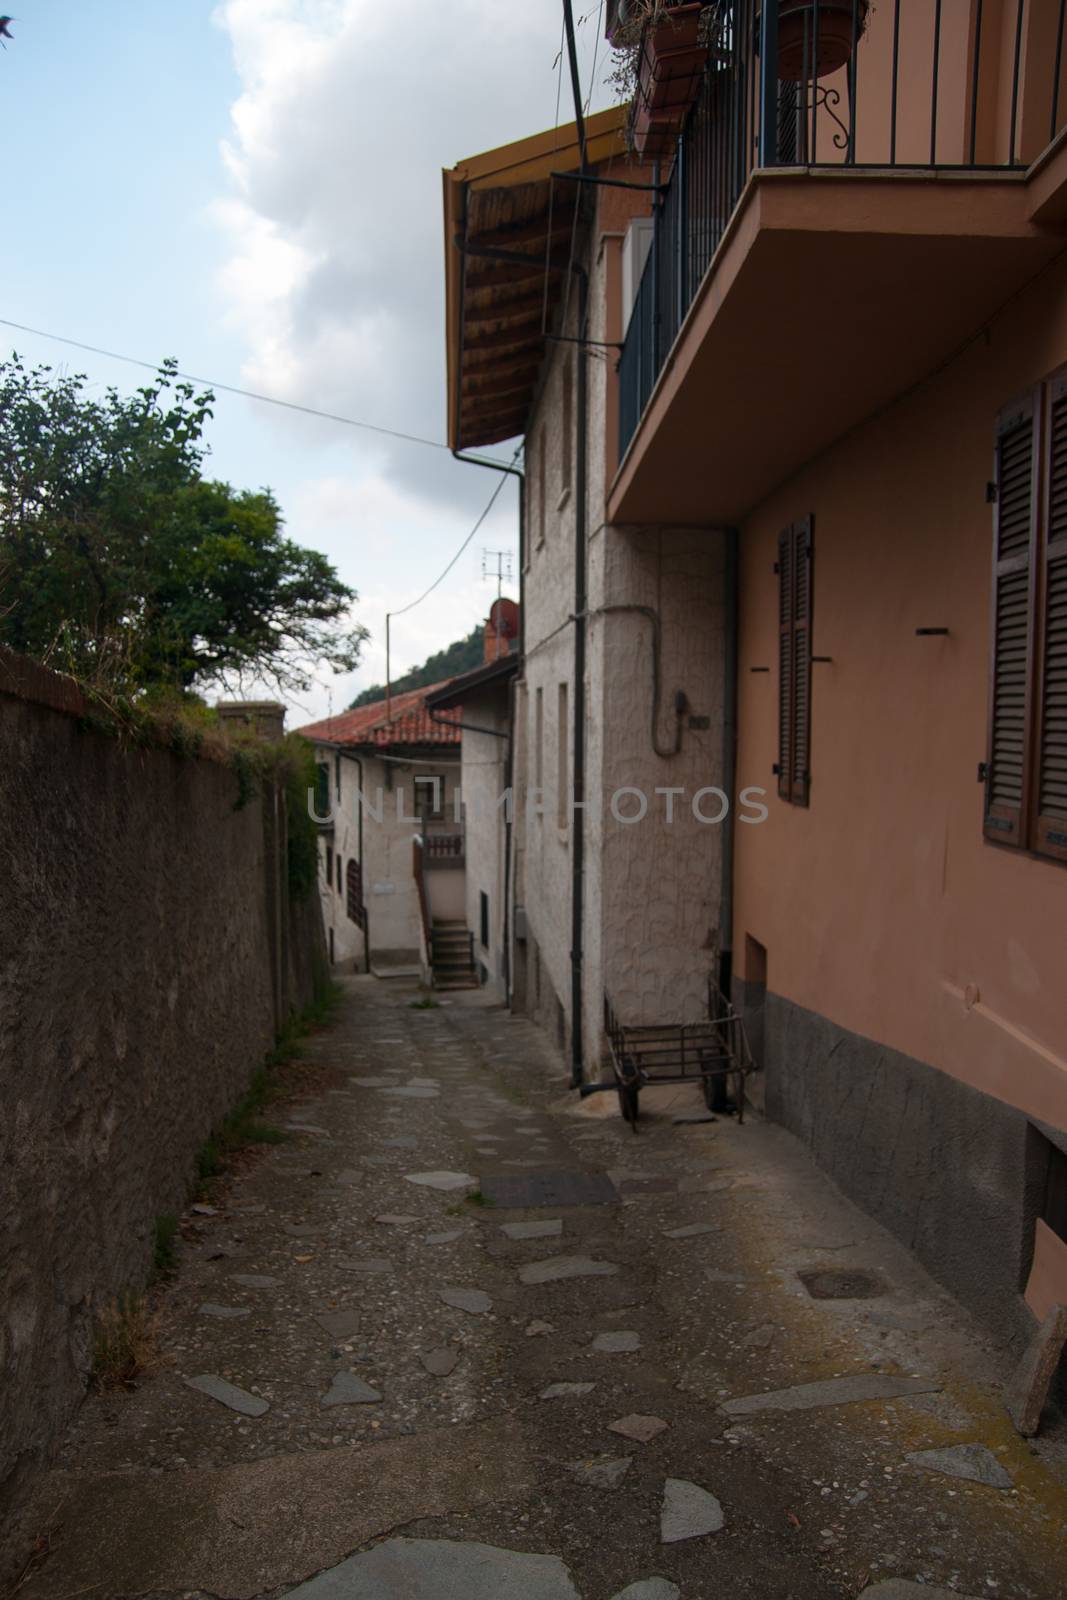 Piemonte village street in summer italy vacation